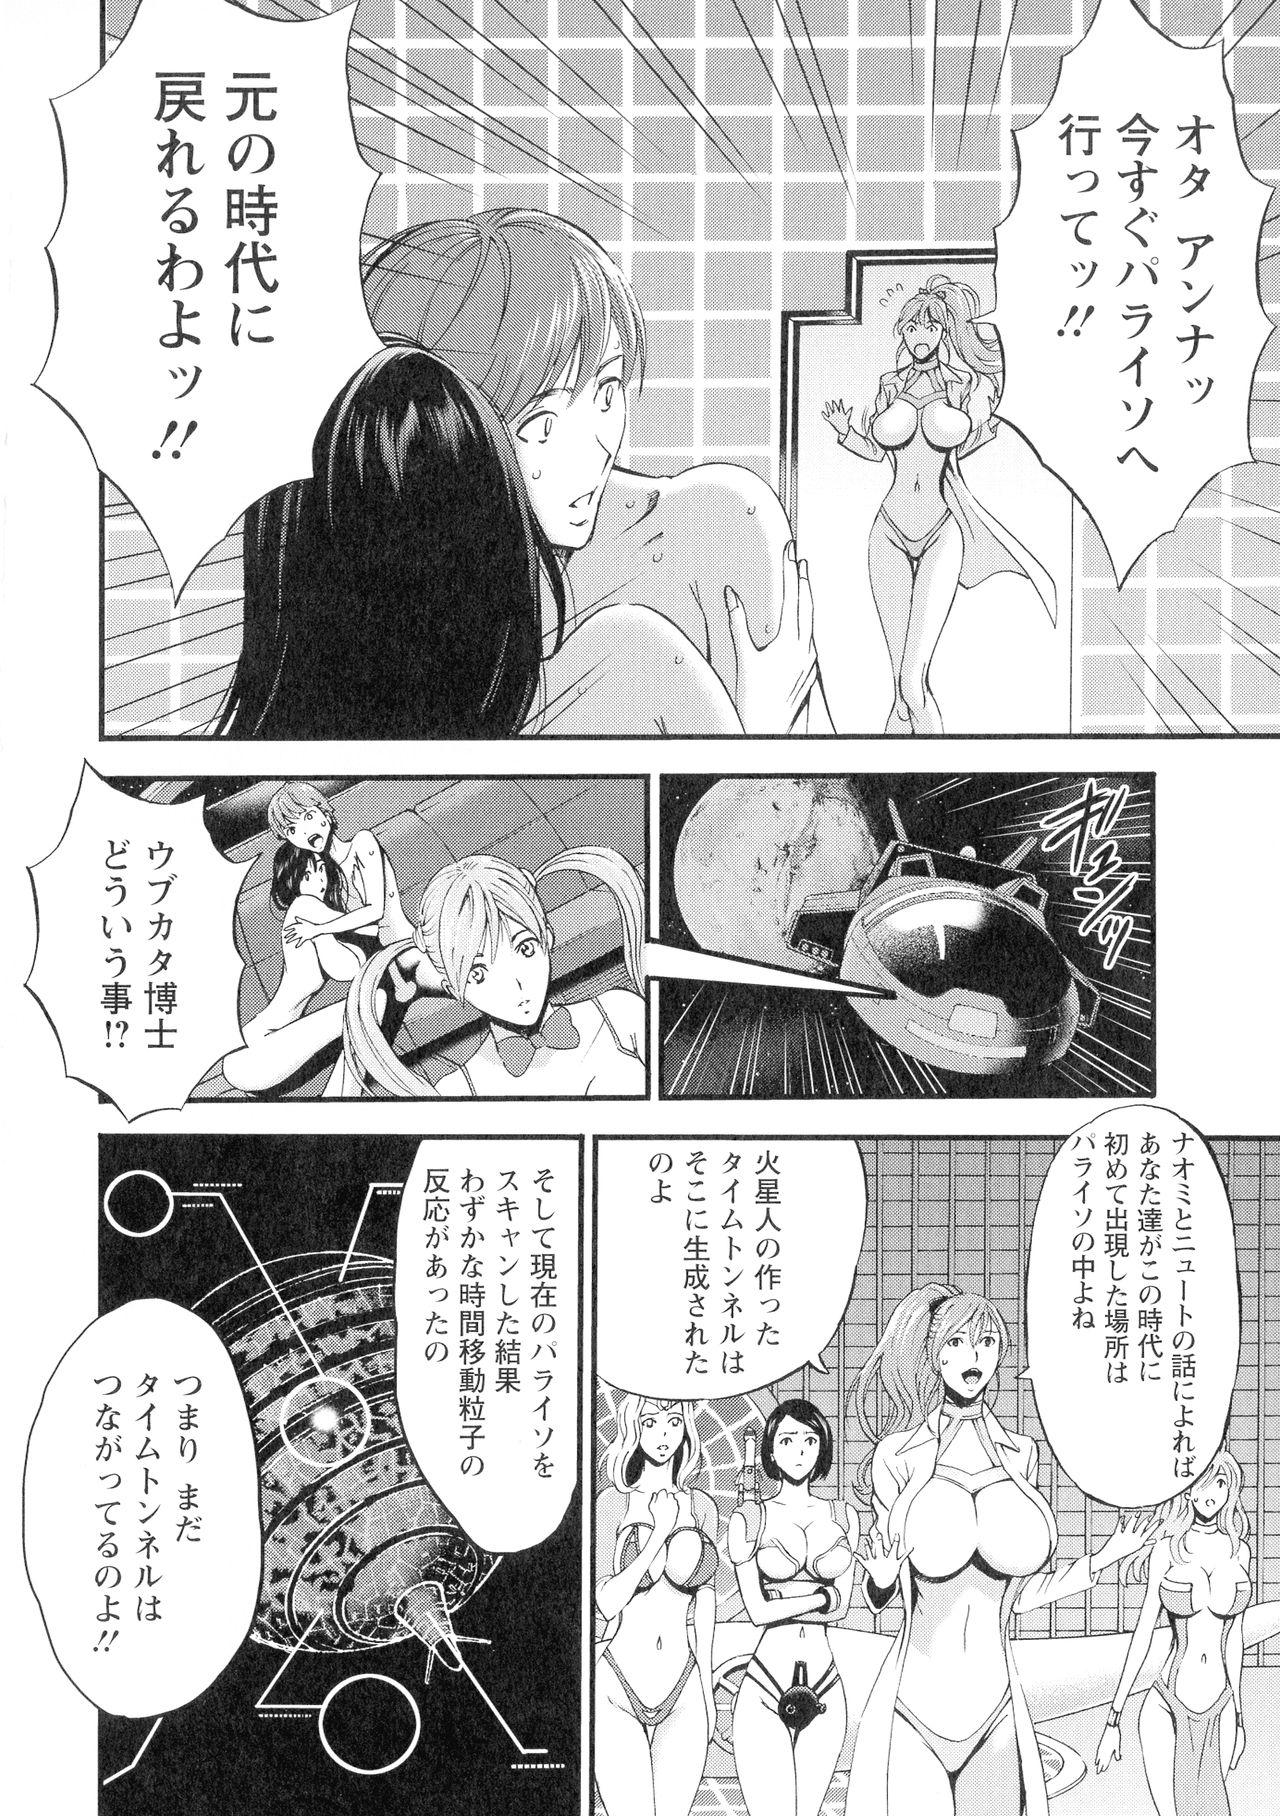 [Nakashima Chosuke] Seireki 2200-nen no Ota 3 Zetchou Time-Slip Girl 156